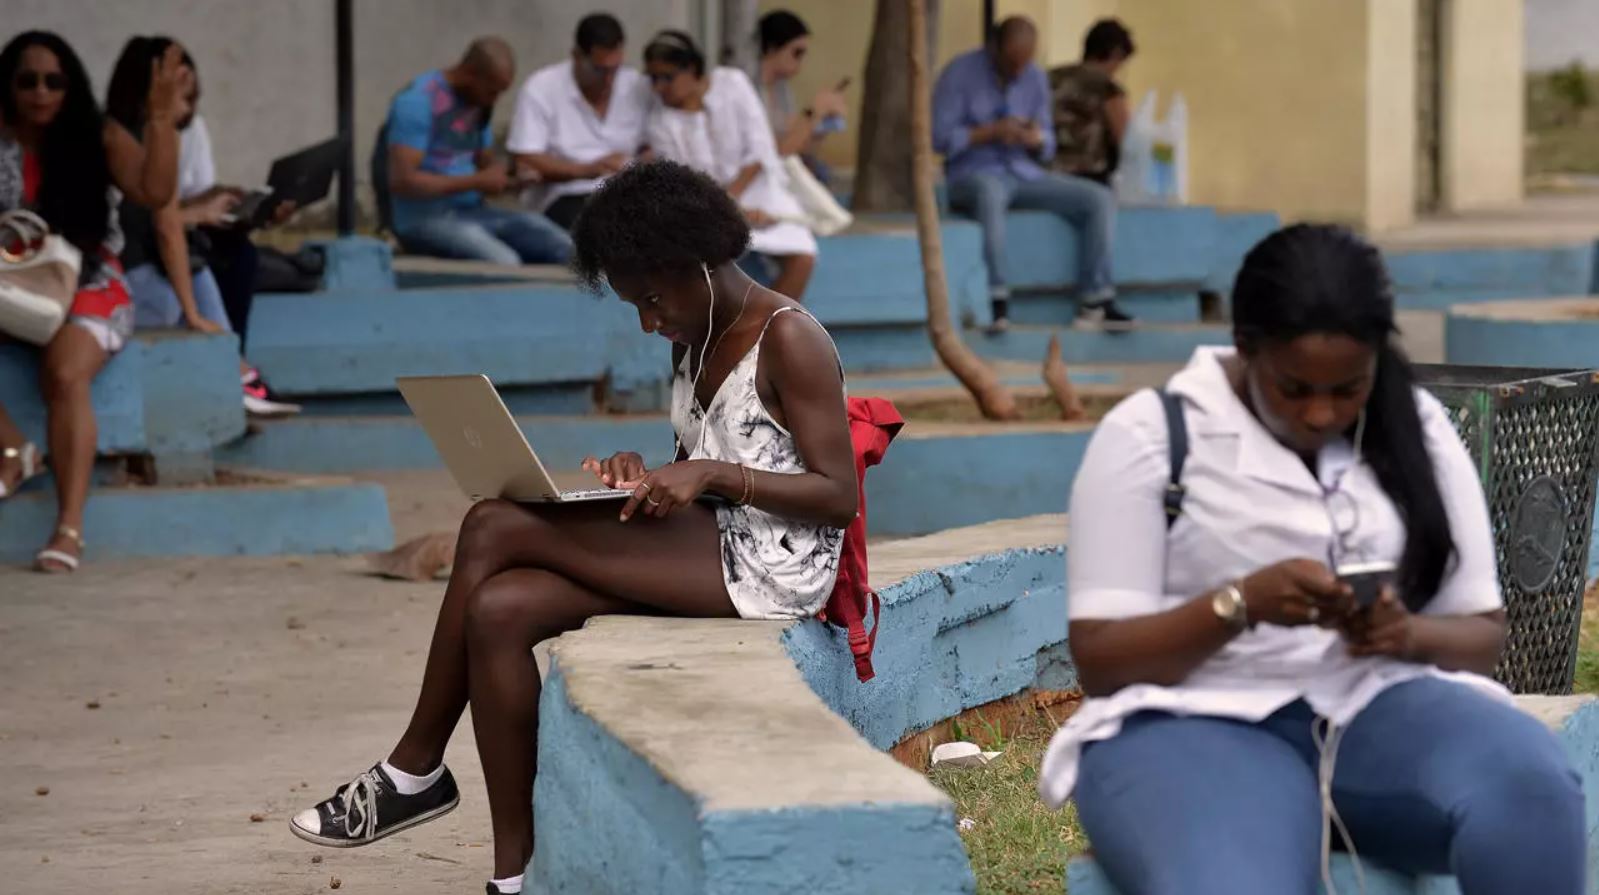 Internet en Cuba, China, Irán y Venezuela refleja políticas autoritarias de vigilancia y restricción de libertades